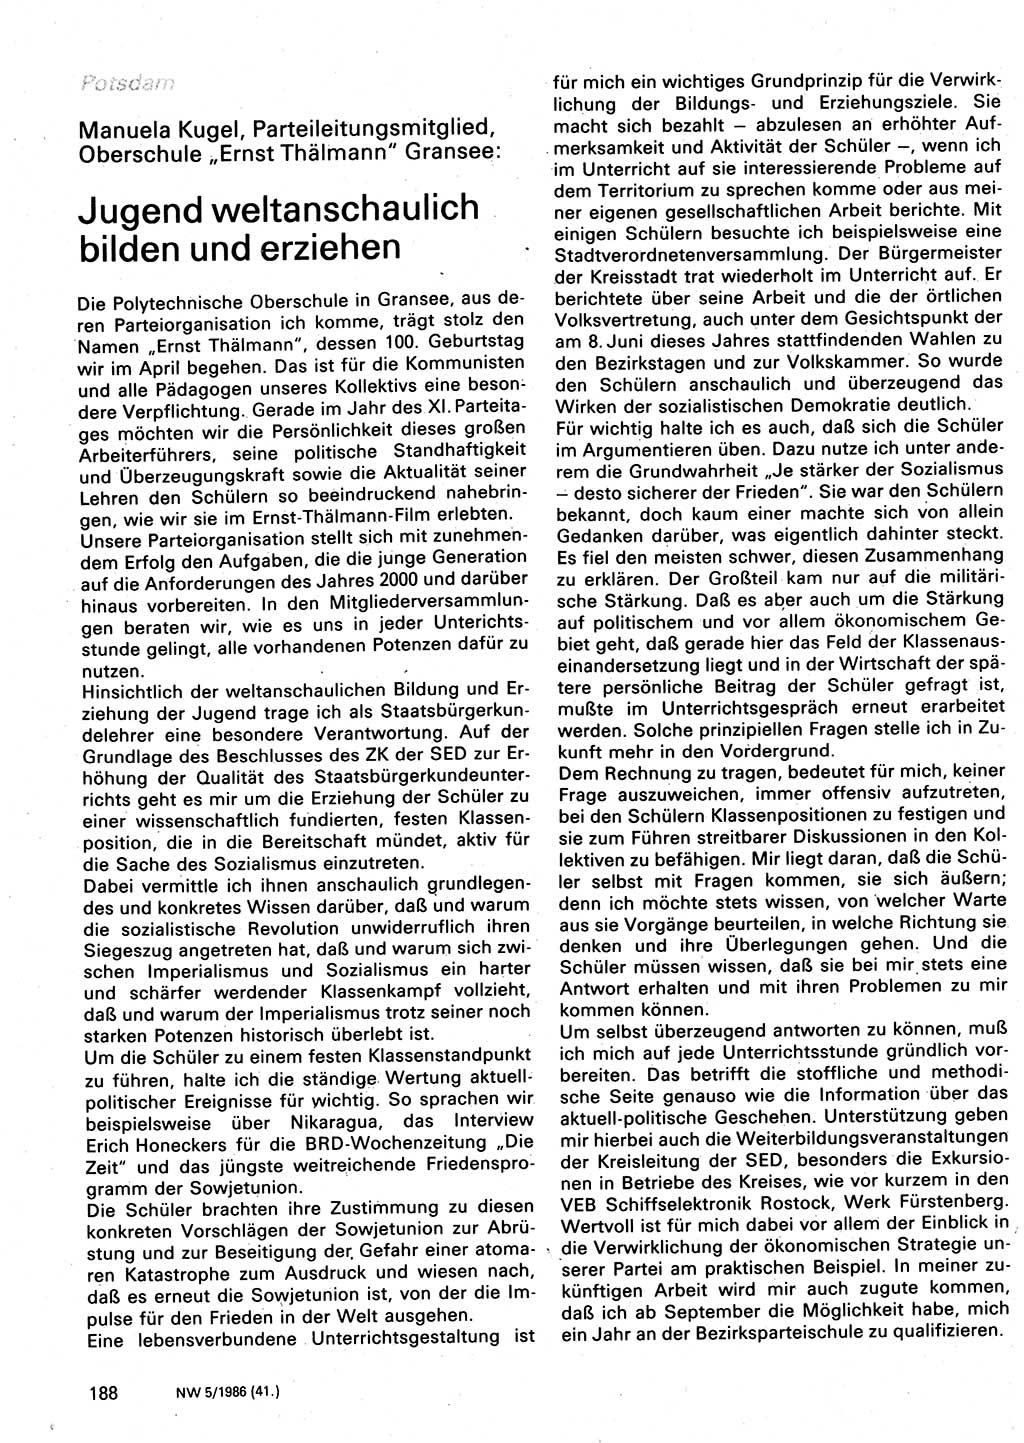 Neuer Weg (NW), Organ des Zentralkomitees (ZK) der SED (Sozialistische Einheitspartei Deutschlands) für Fragen des Parteilebens, 41. Jahrgang [Deutsche Demokratische Republik (DDR)] 1986, Seite 188 (NW ZK SED DDR 1986, S. 188)